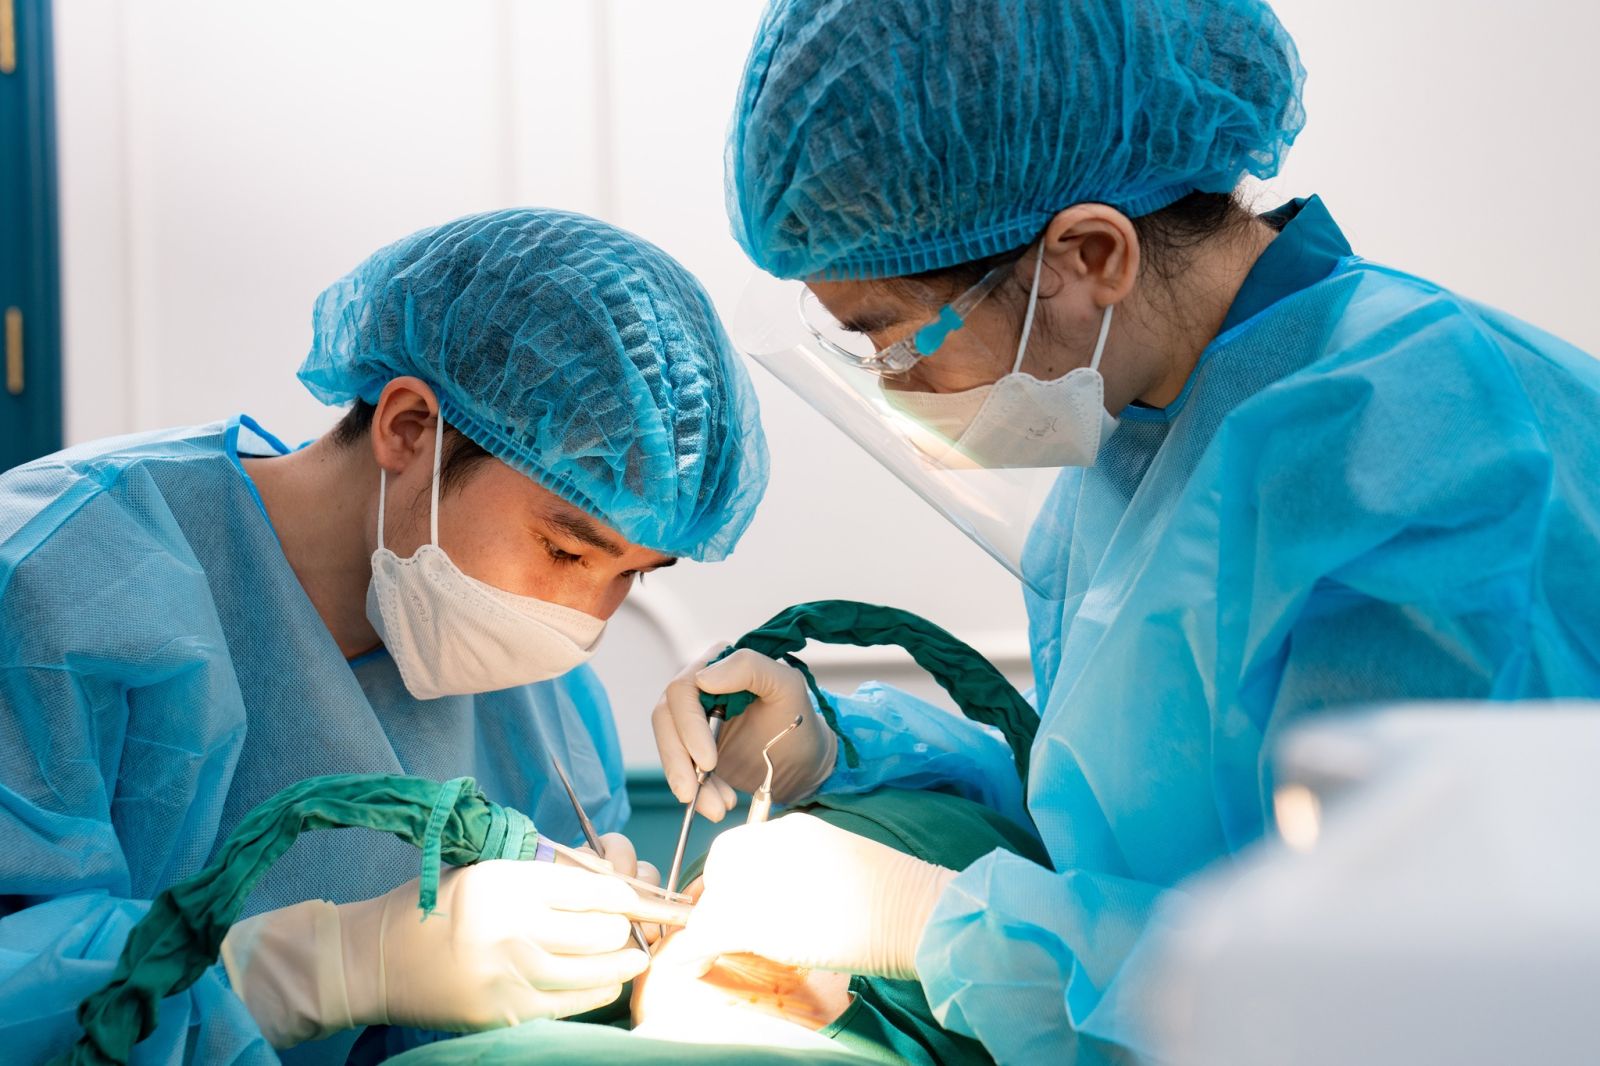 Jet Dentist với đội ngũ bác sĩ chuyên môn cao, dày dặn kinh nghiệm đã thực hiện hàng ngàn ca phẫu thuật cắm Implant với tỷ lệ thành công gần như tuyệt đối